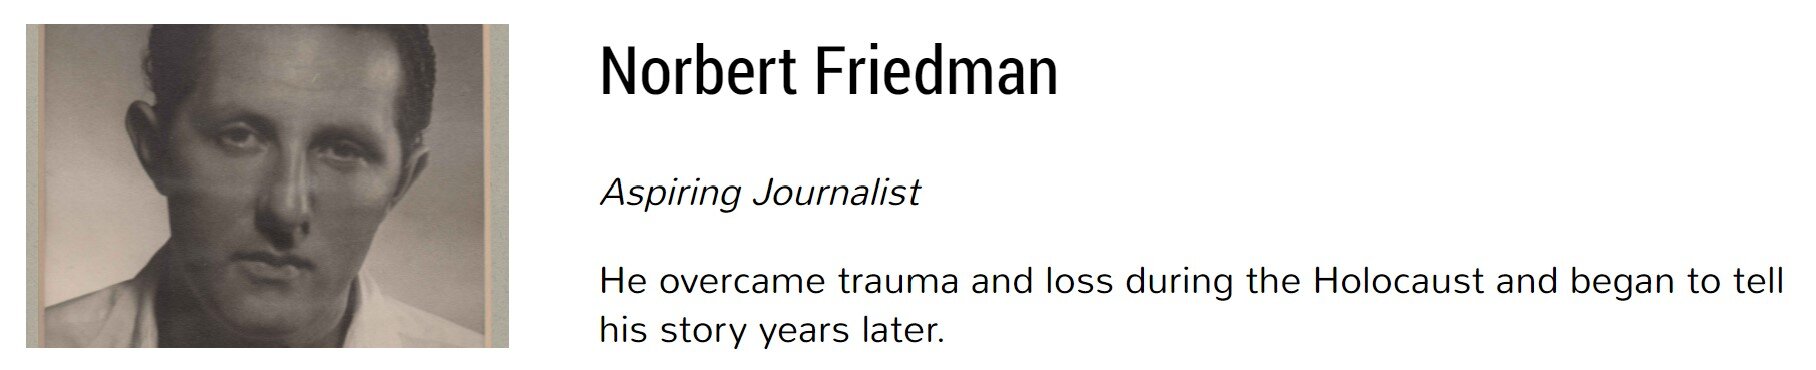 Friedman.jpg